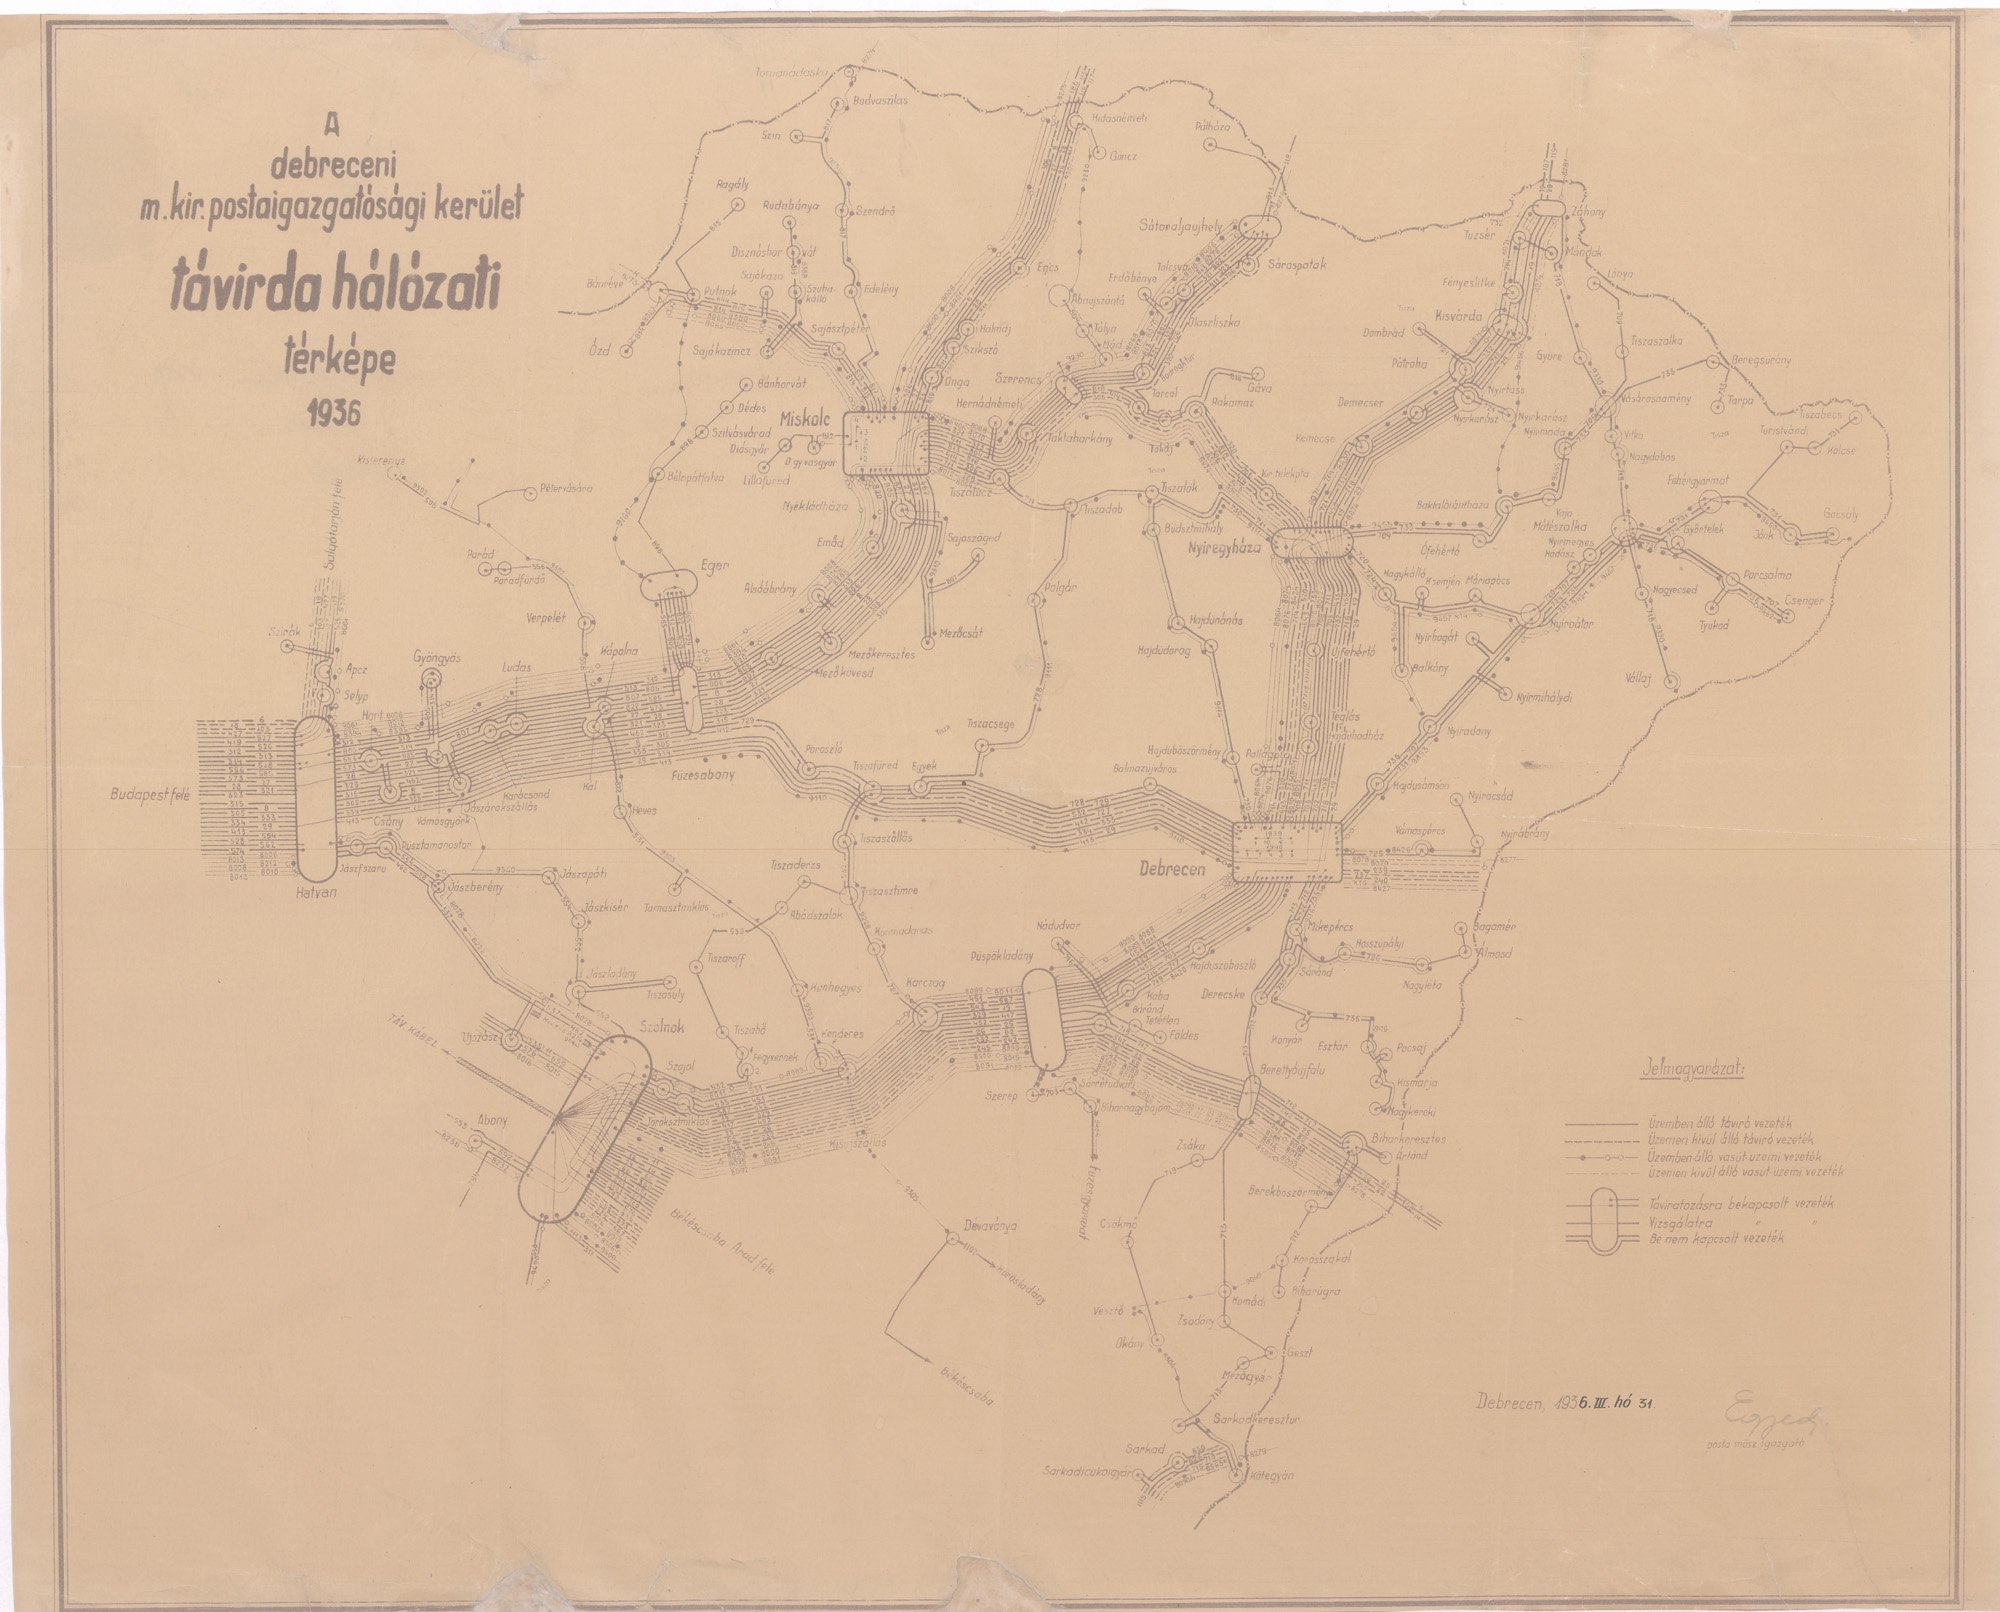 A debreceni magyar királyi postaigazgatósági kerület távírdahálózati térképe, 1936 (Postamúzeum CC BY-NC-SA)